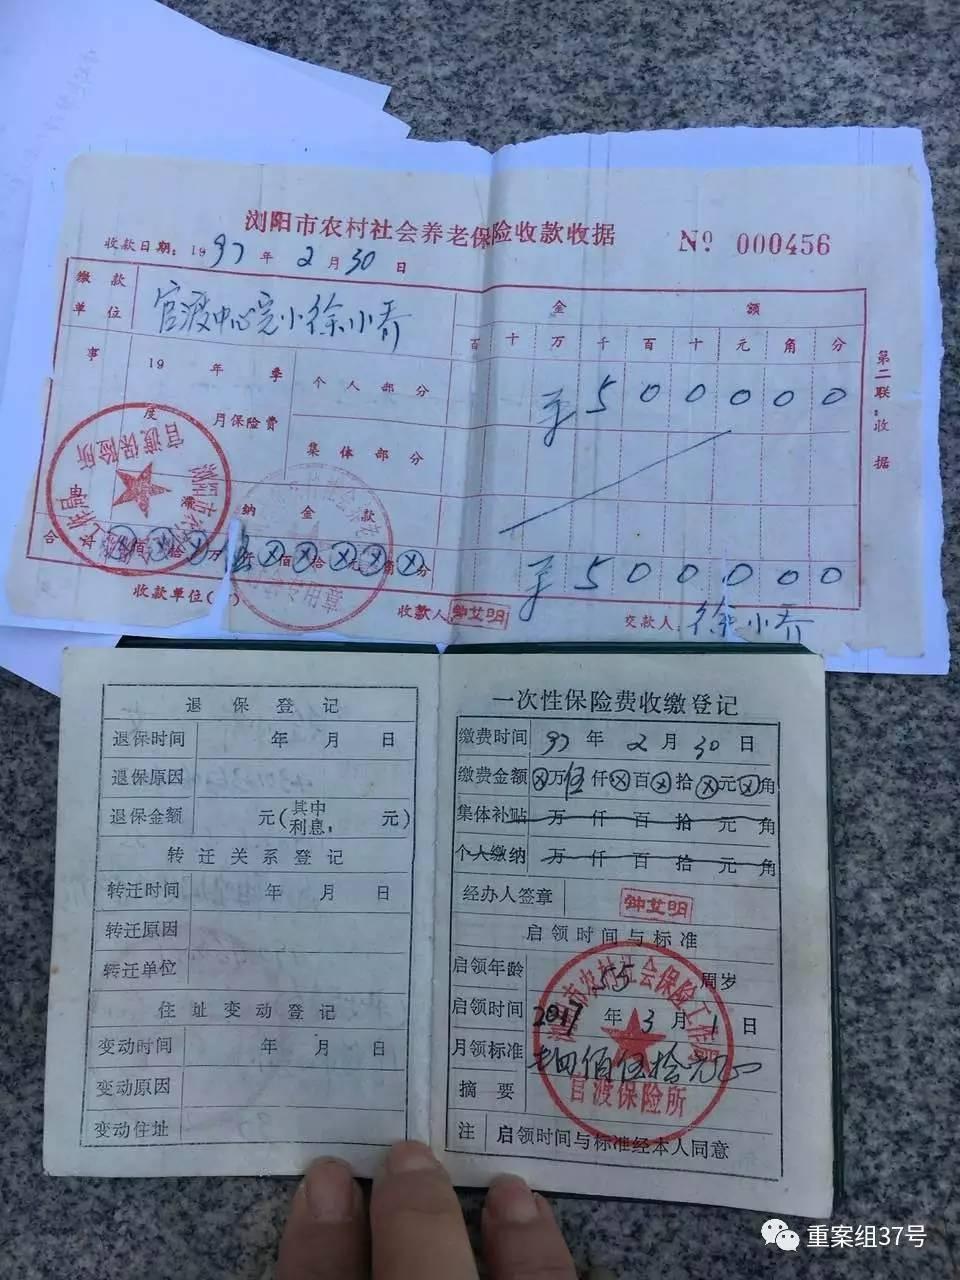 浏阳市农妇20年前 购买农村社会养老保险 今兑现期满 确无法兑现